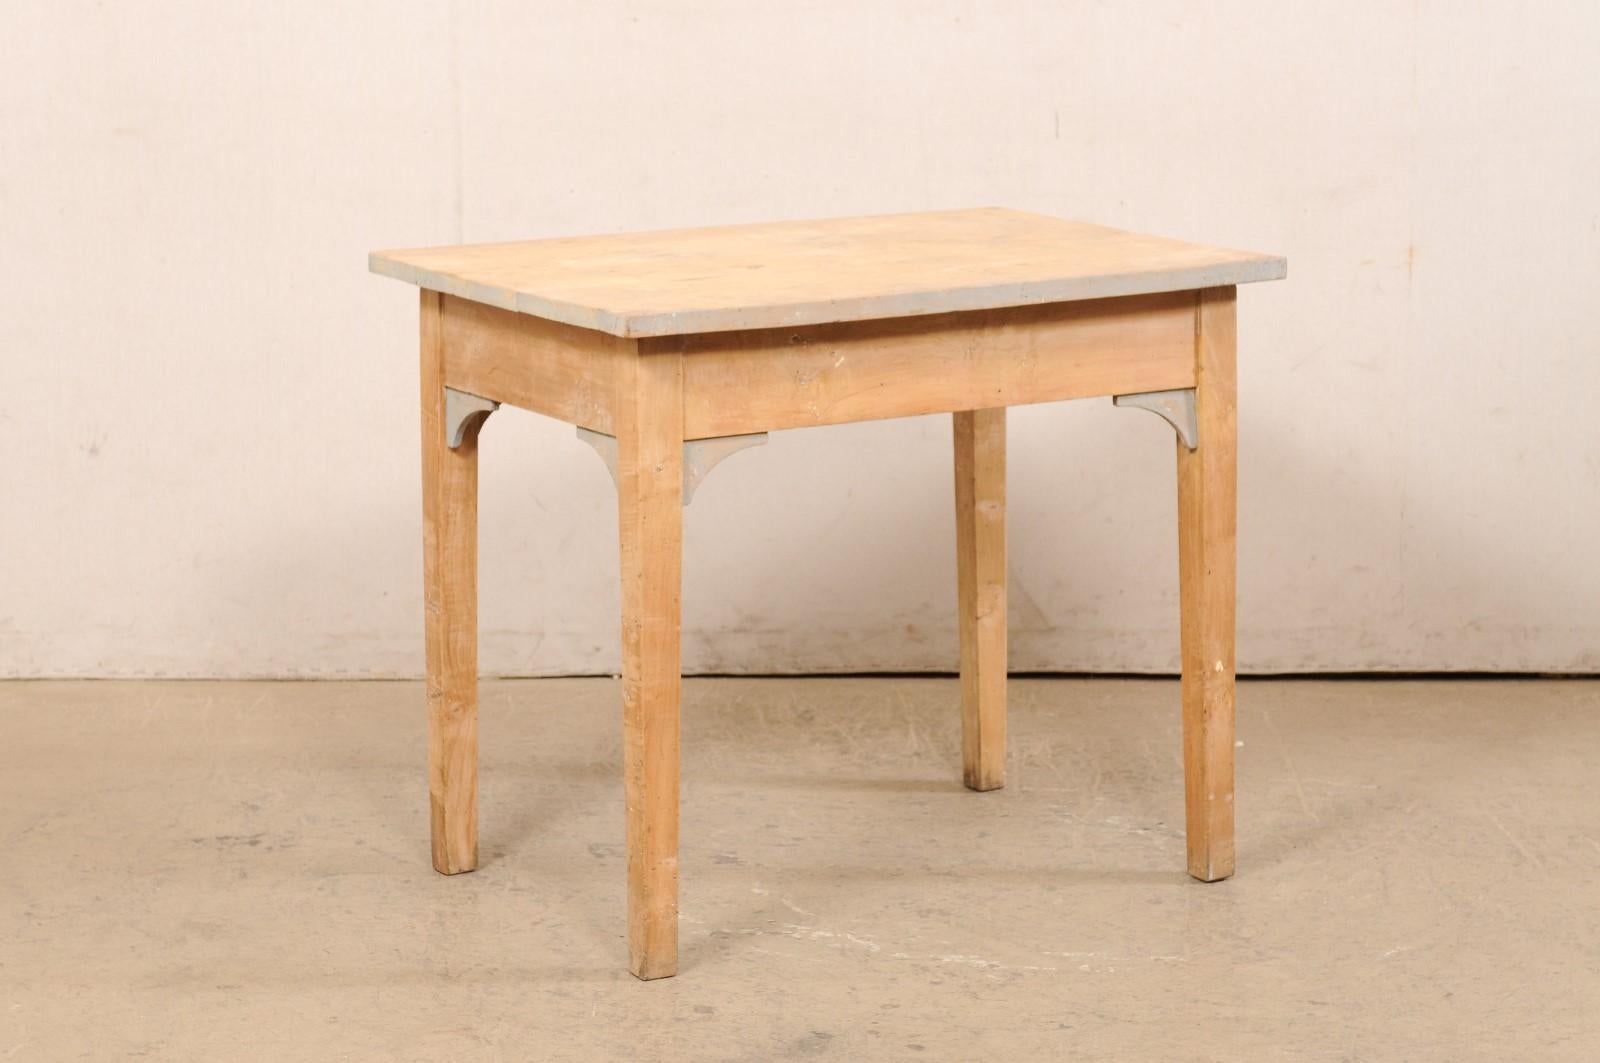 Ein schwedischer Beistelltisch aus gewelltem Birkenholz aus dem frühen 20. Jahrhundert. Dieser antike Tisch aus Schweden hat eine rechteckige Form und ist in klaren/linearen Linien gestaltet. Die Platte überragt die darunter liegende Schürze, die